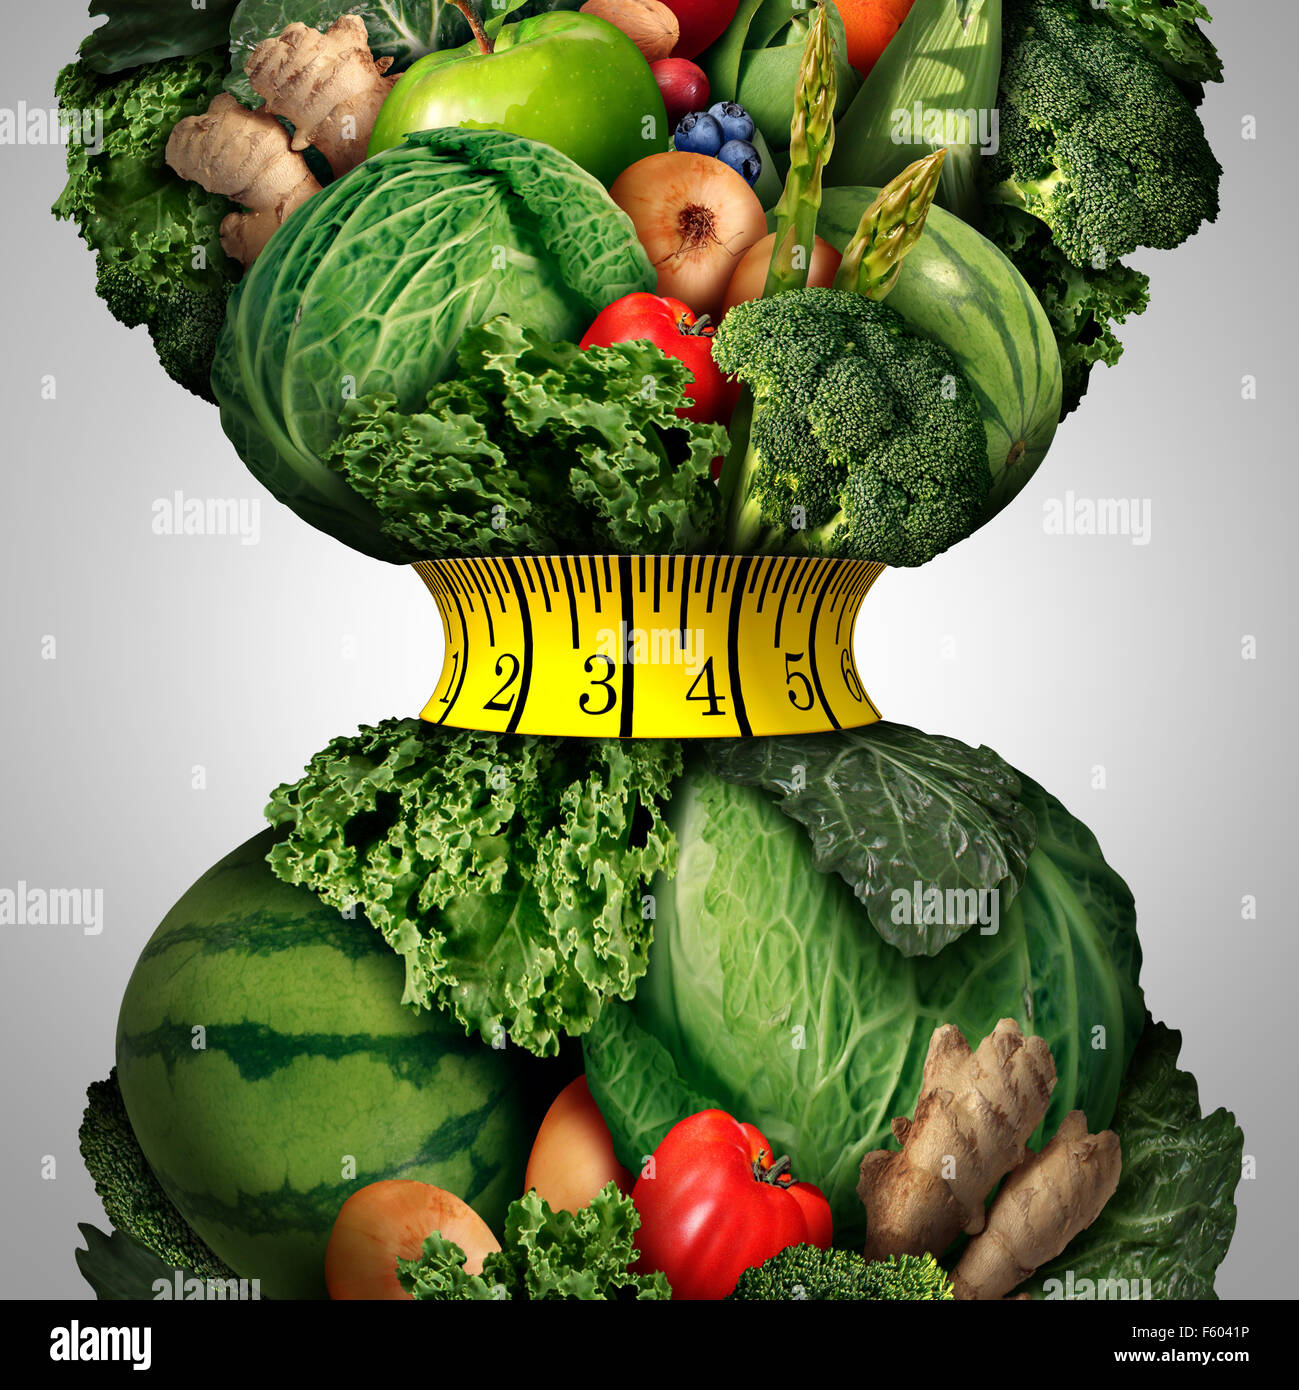 La perte de poids saine alimentation comme un groupe de fruits et légumes frais avec un ruban de mesure de remise en forme enroulée autour d'un rétrécissement serré Banque D'Images